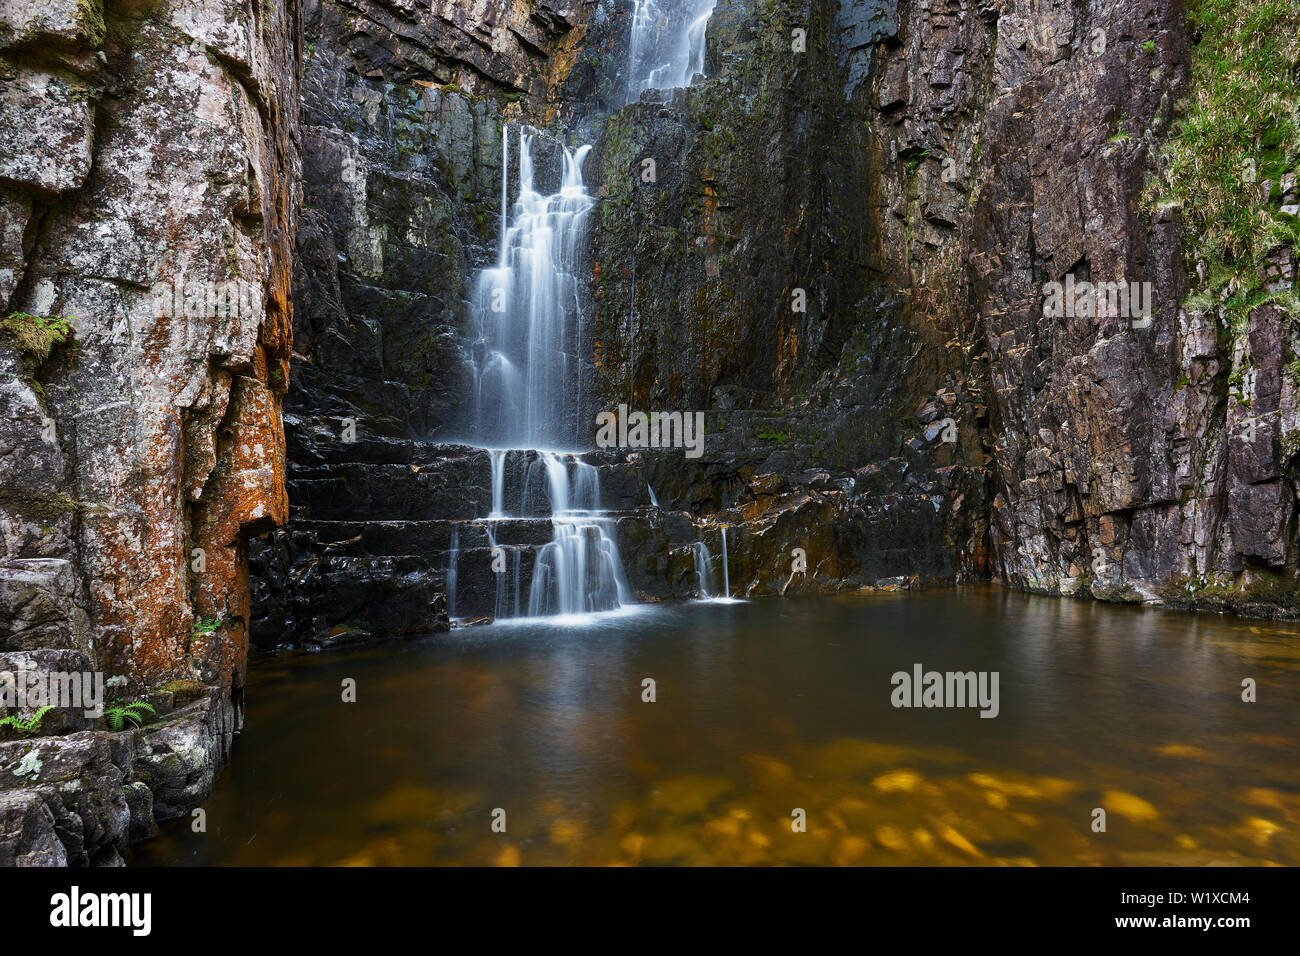 Wailing Widow Waterfall, near Kylesku, Assynt, Sutherland, Scotland. Stock Photo